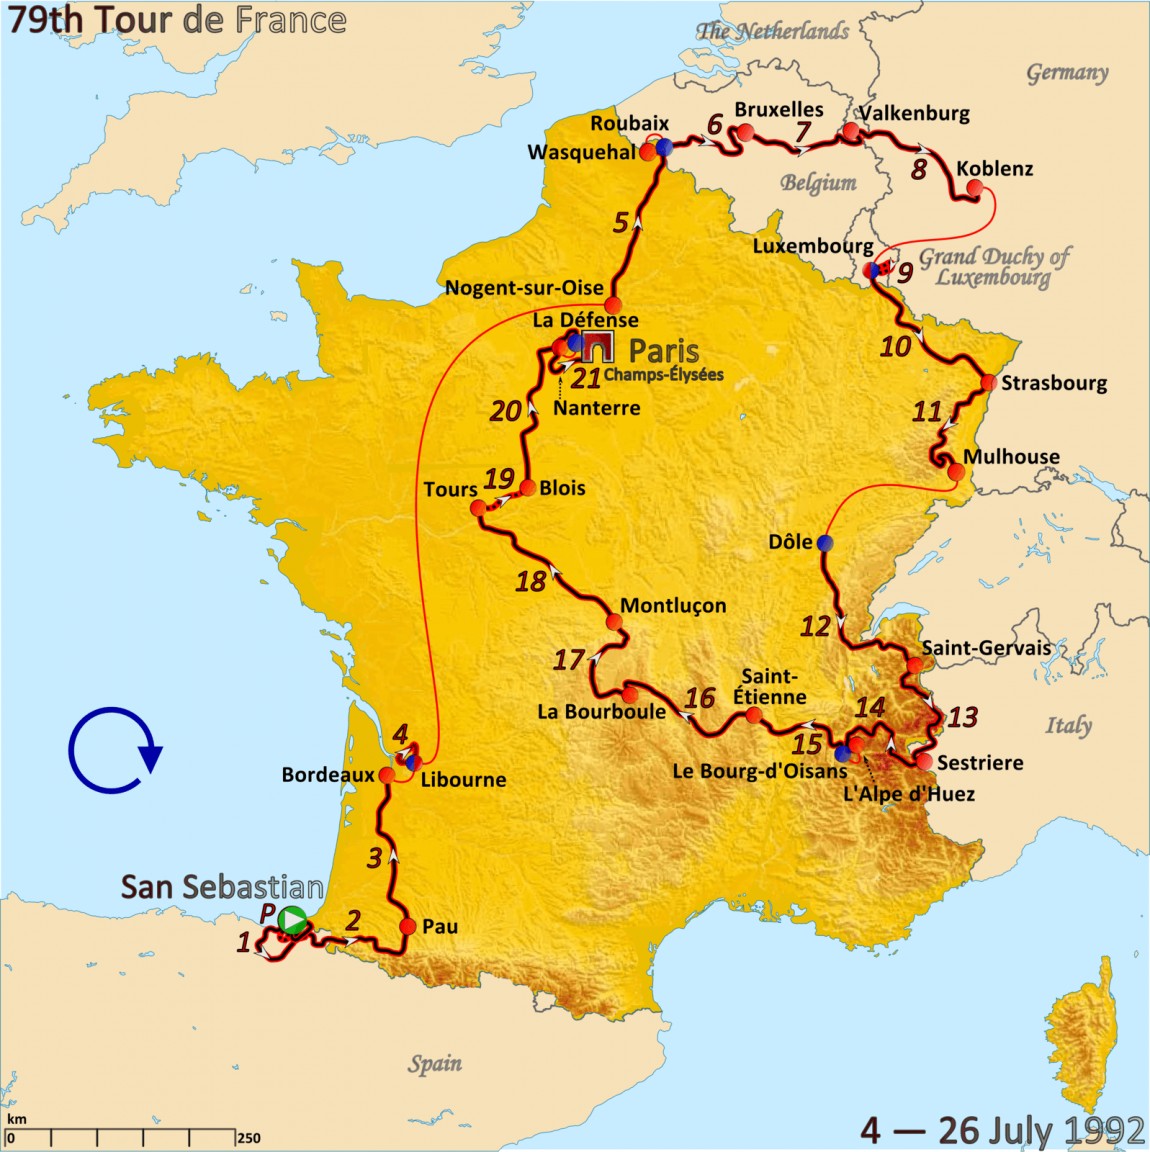 Route of the 1992 Tour de France